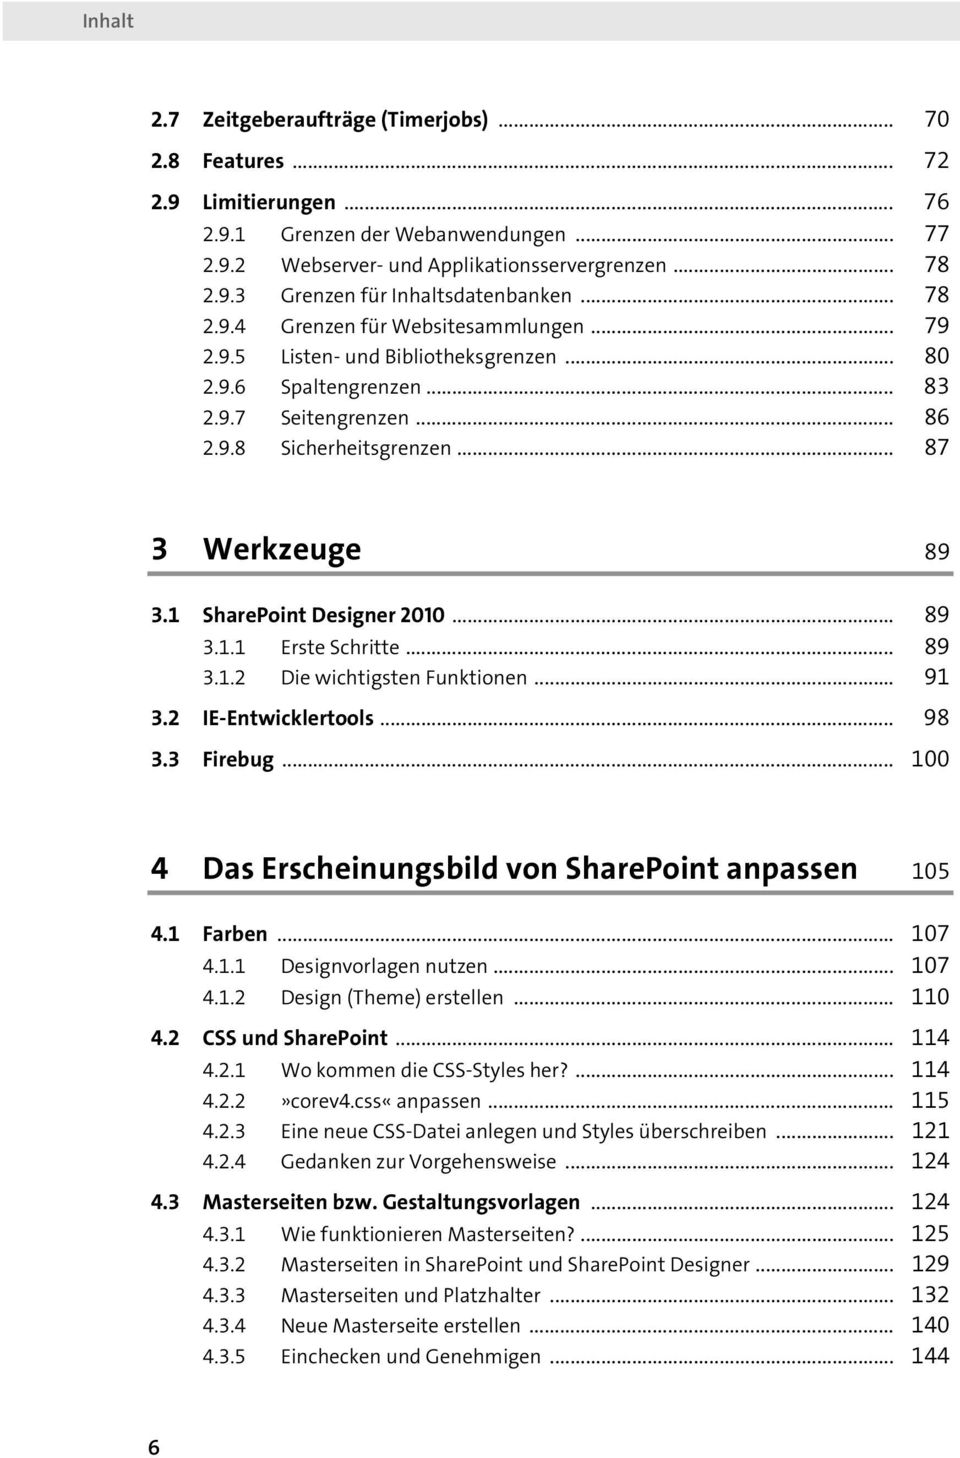 1 SharePoint Designer 2010... 89 3.1.1 Erste Schritte... 89 3.1.2 Die wichtigsten Funktionen... 91 3.2 IE-Entwicklertools... 98 3.3 Firebug... 100 4 Das Erscheinungsbild von SharePoint anpassen 105 4.